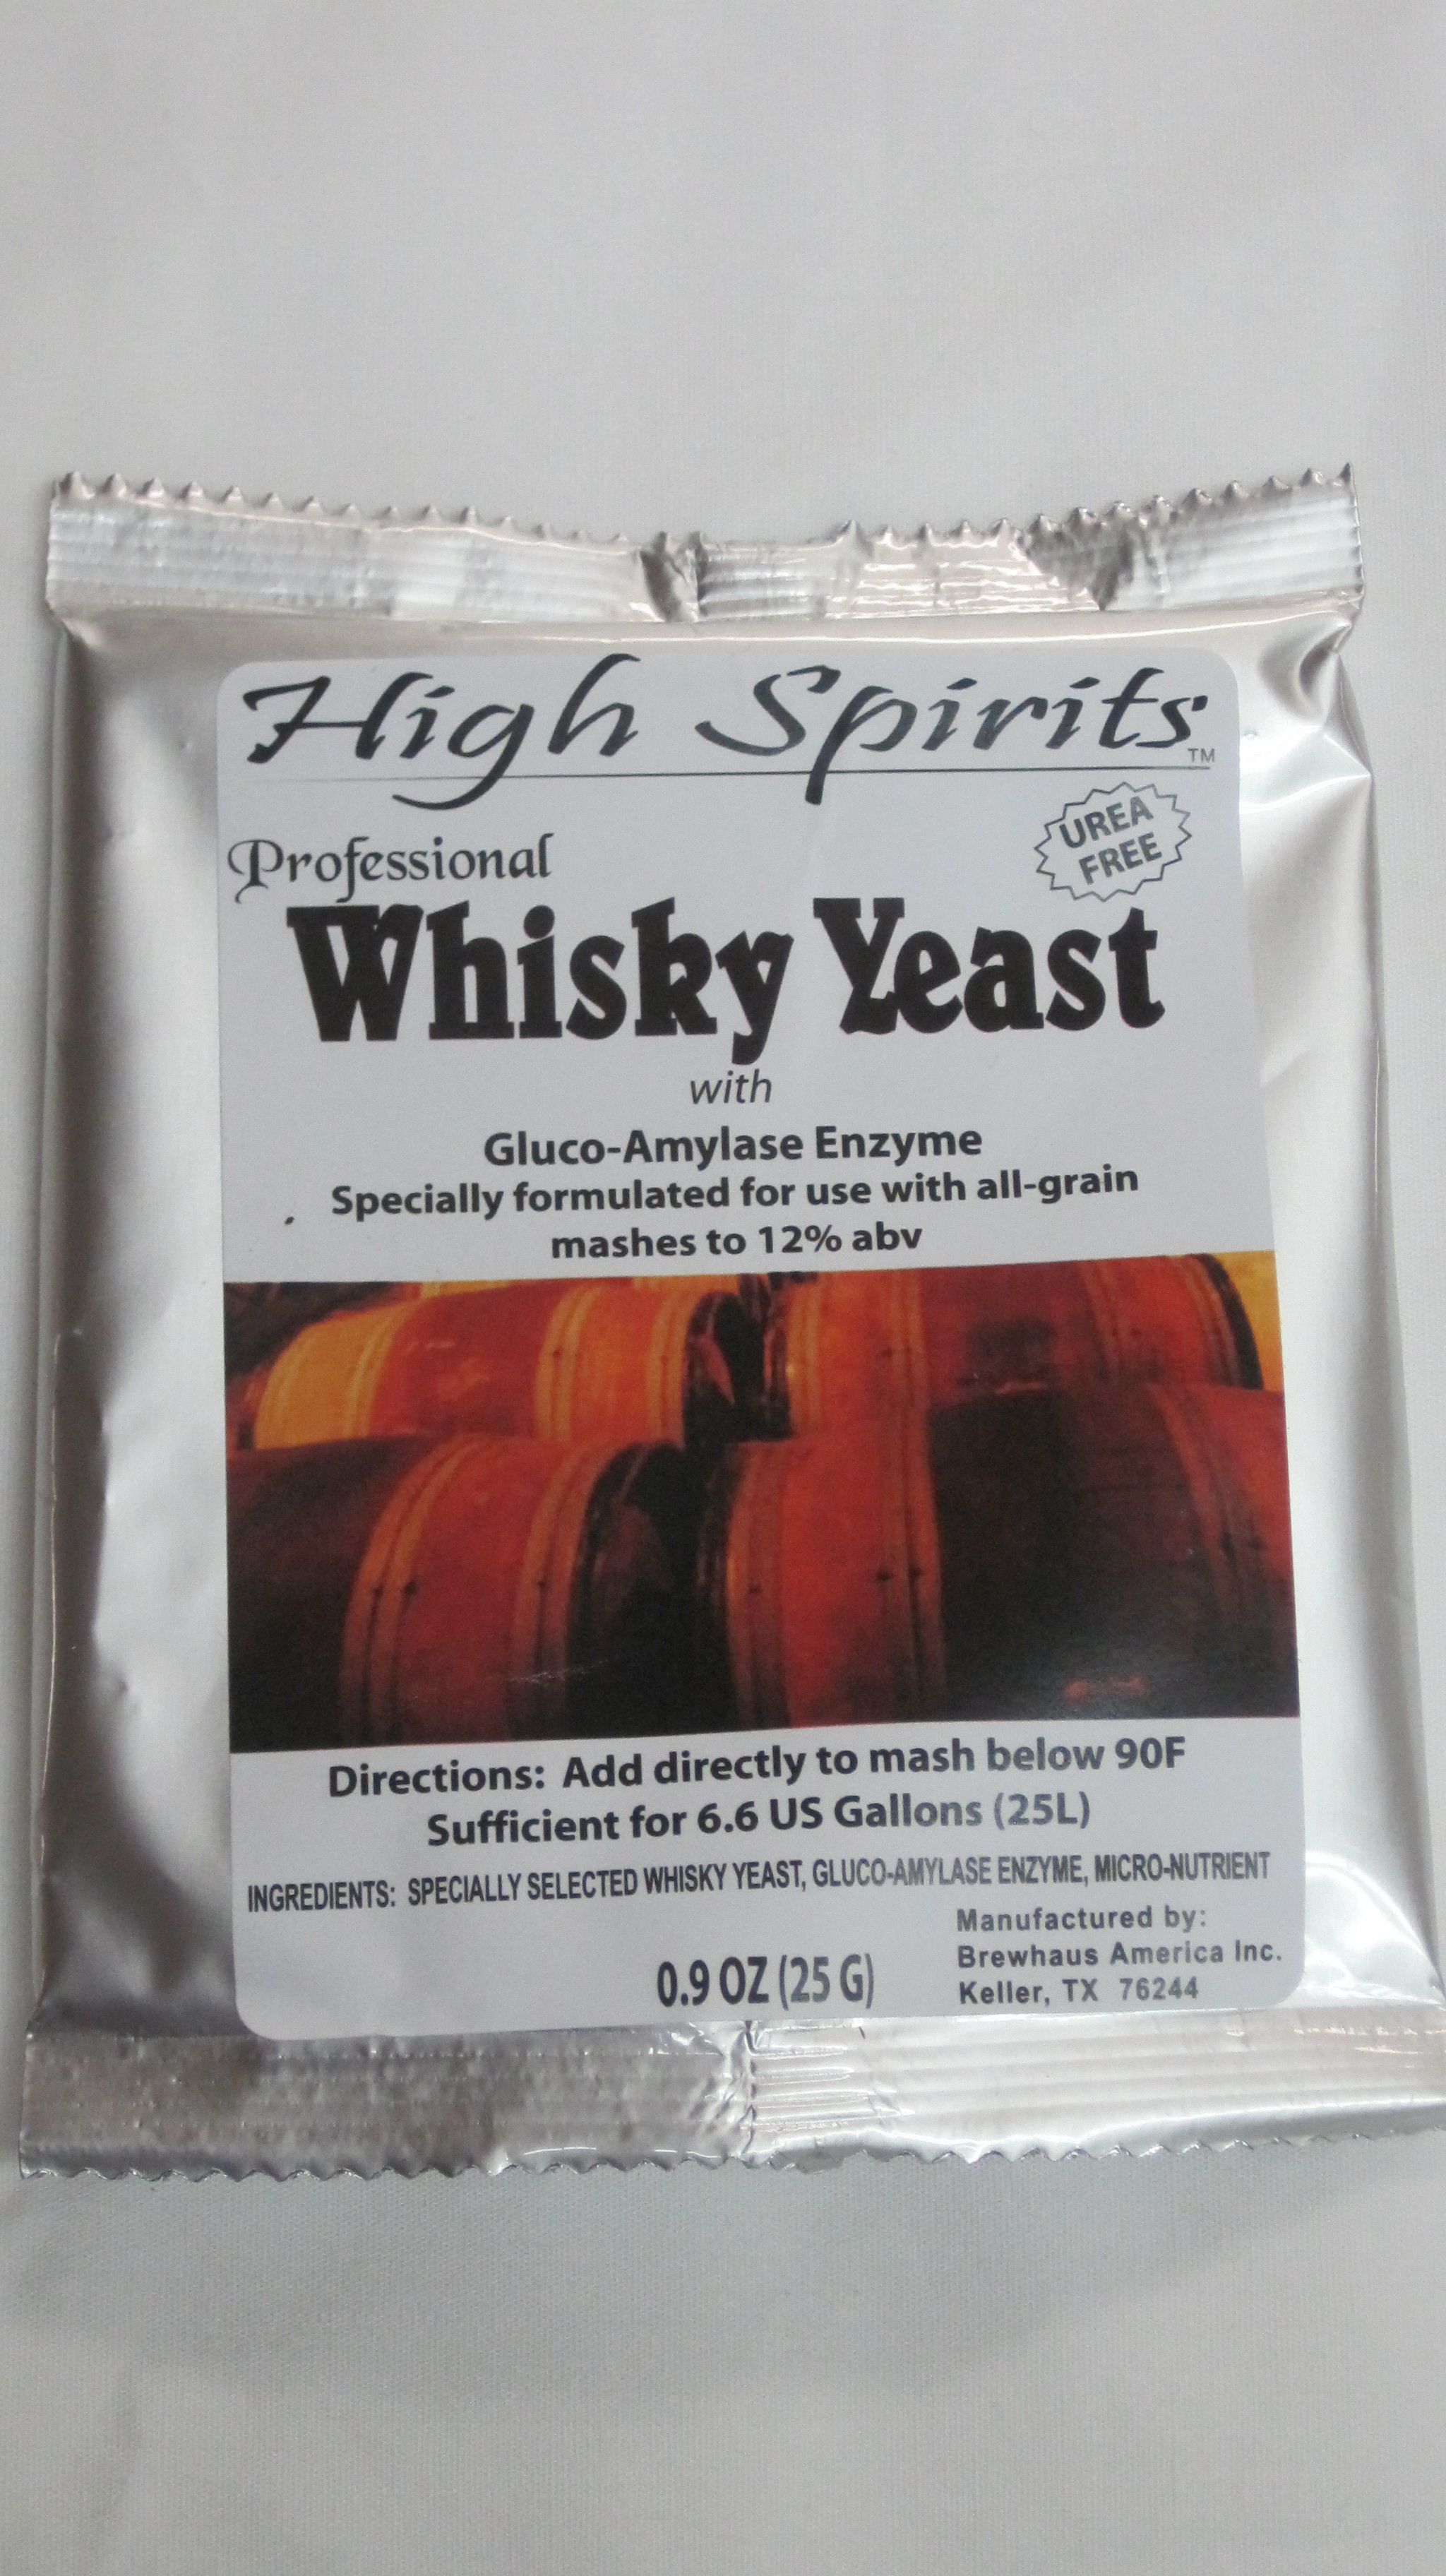 Yeast rum and whiskey 001.jpg